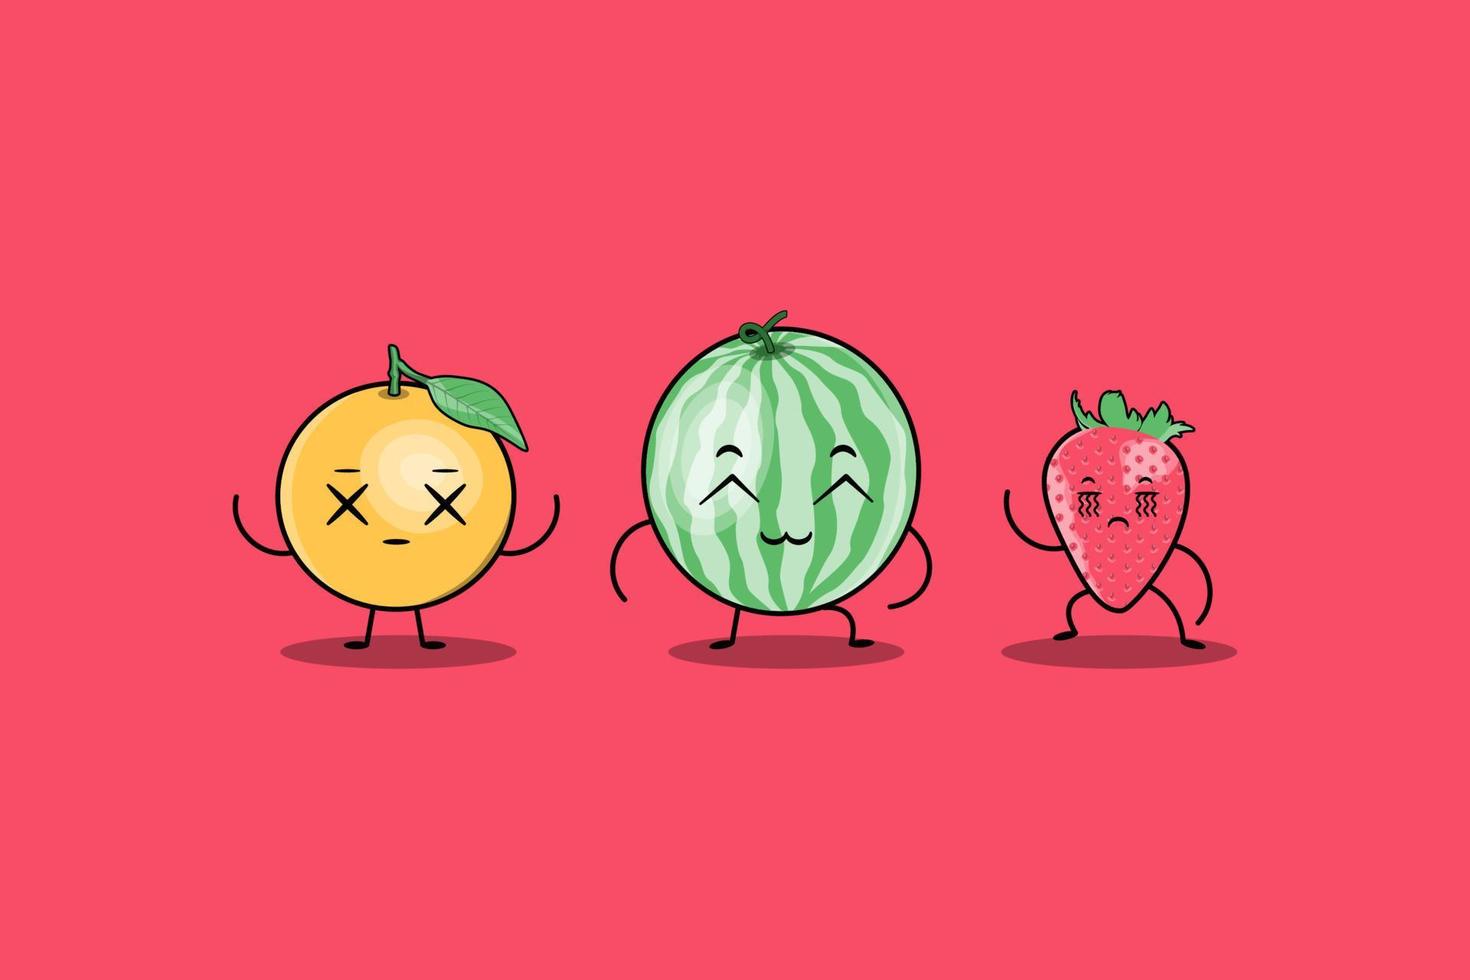 schattige kleurrijke kawaii fruit stripfiguren vector set met veel expressie